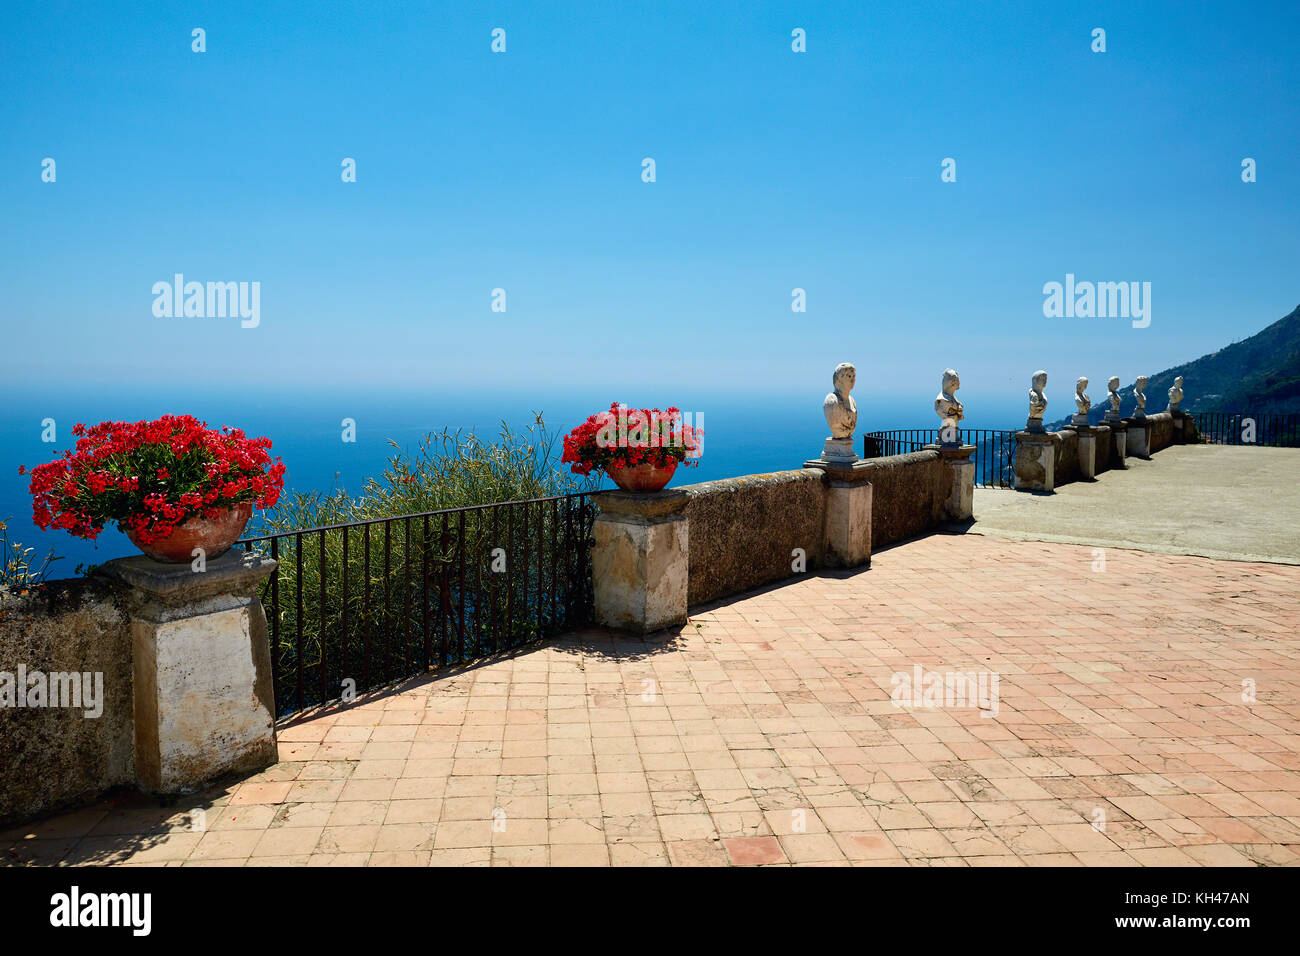 Terrasse de l'infini avec fleurs en pot et des statues, la villa Cimbrone, Ravello, Campanie, Italie. Banque D'Images